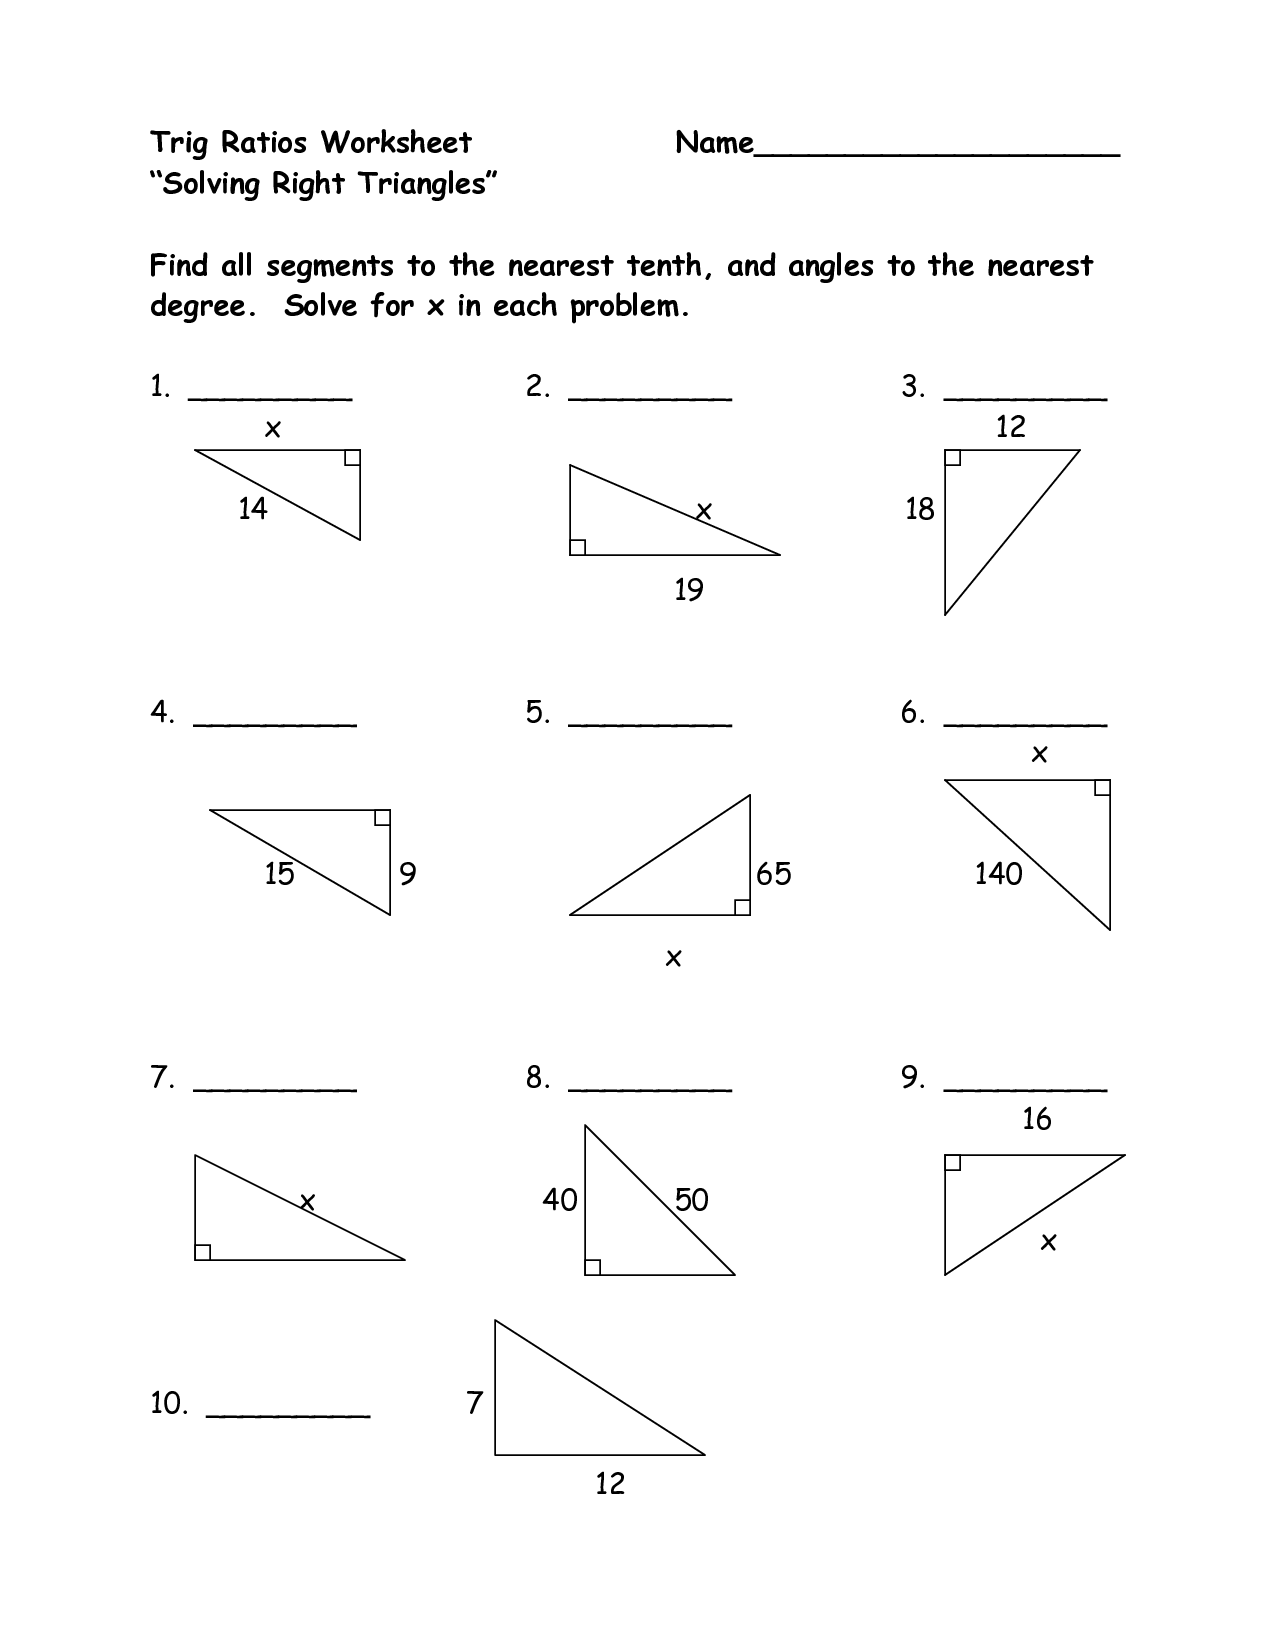 trigonometry questions quiz